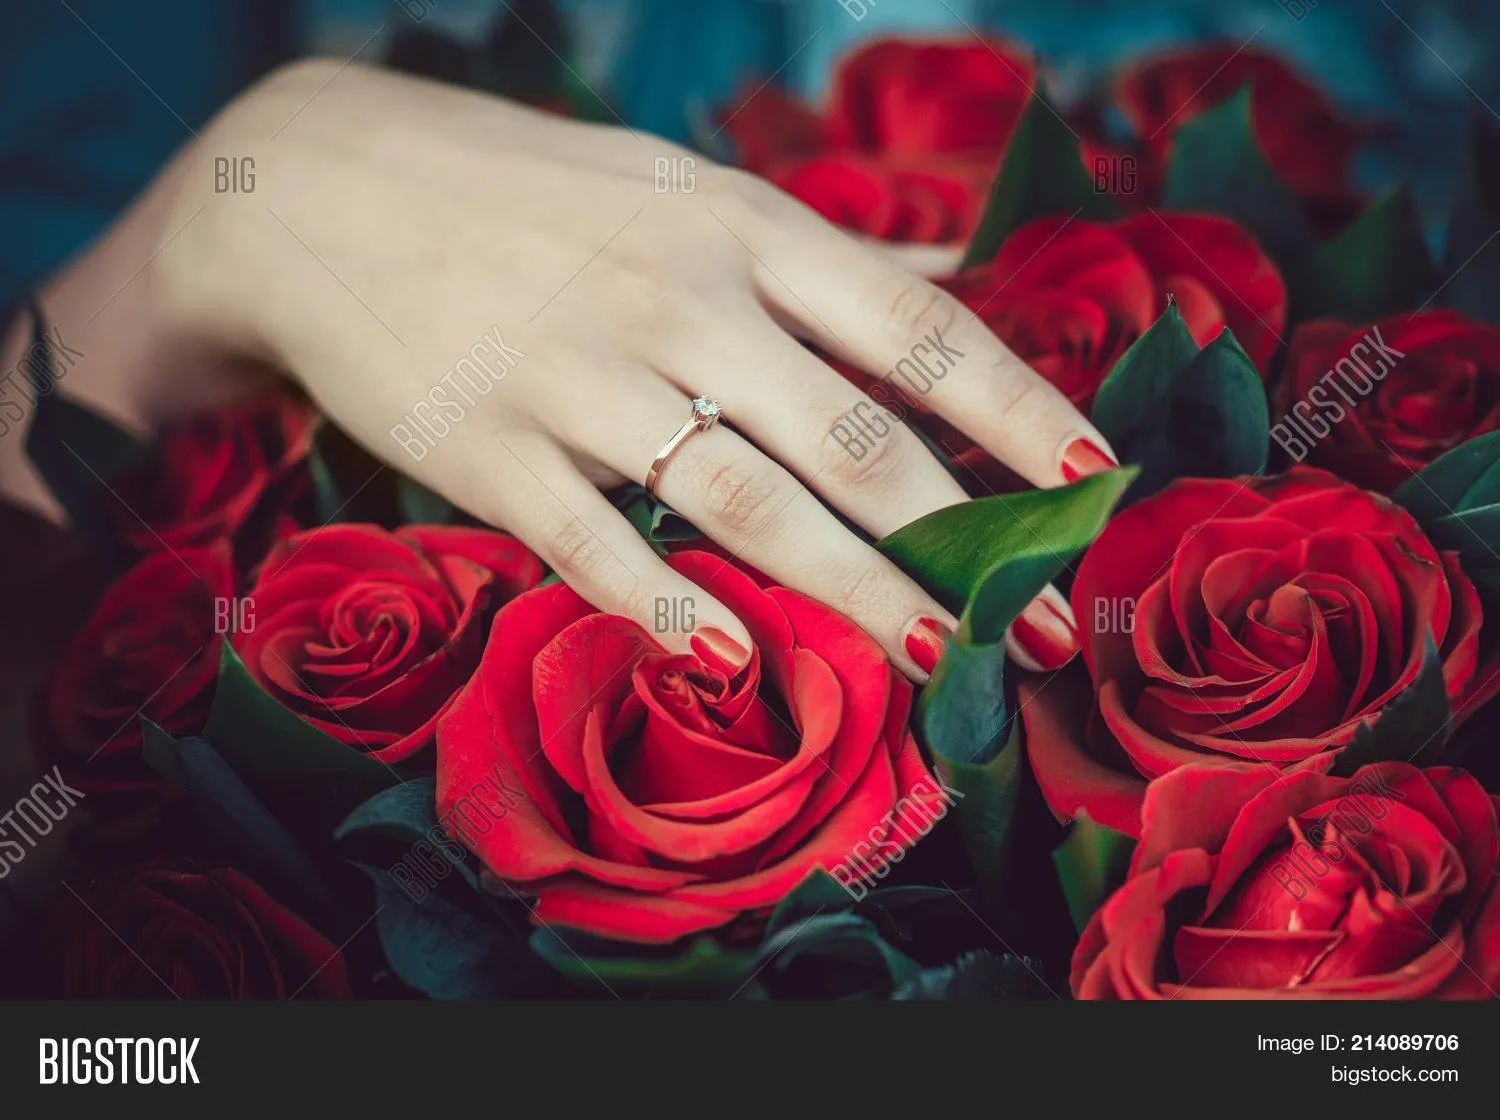 Цветы и кольцо предложение